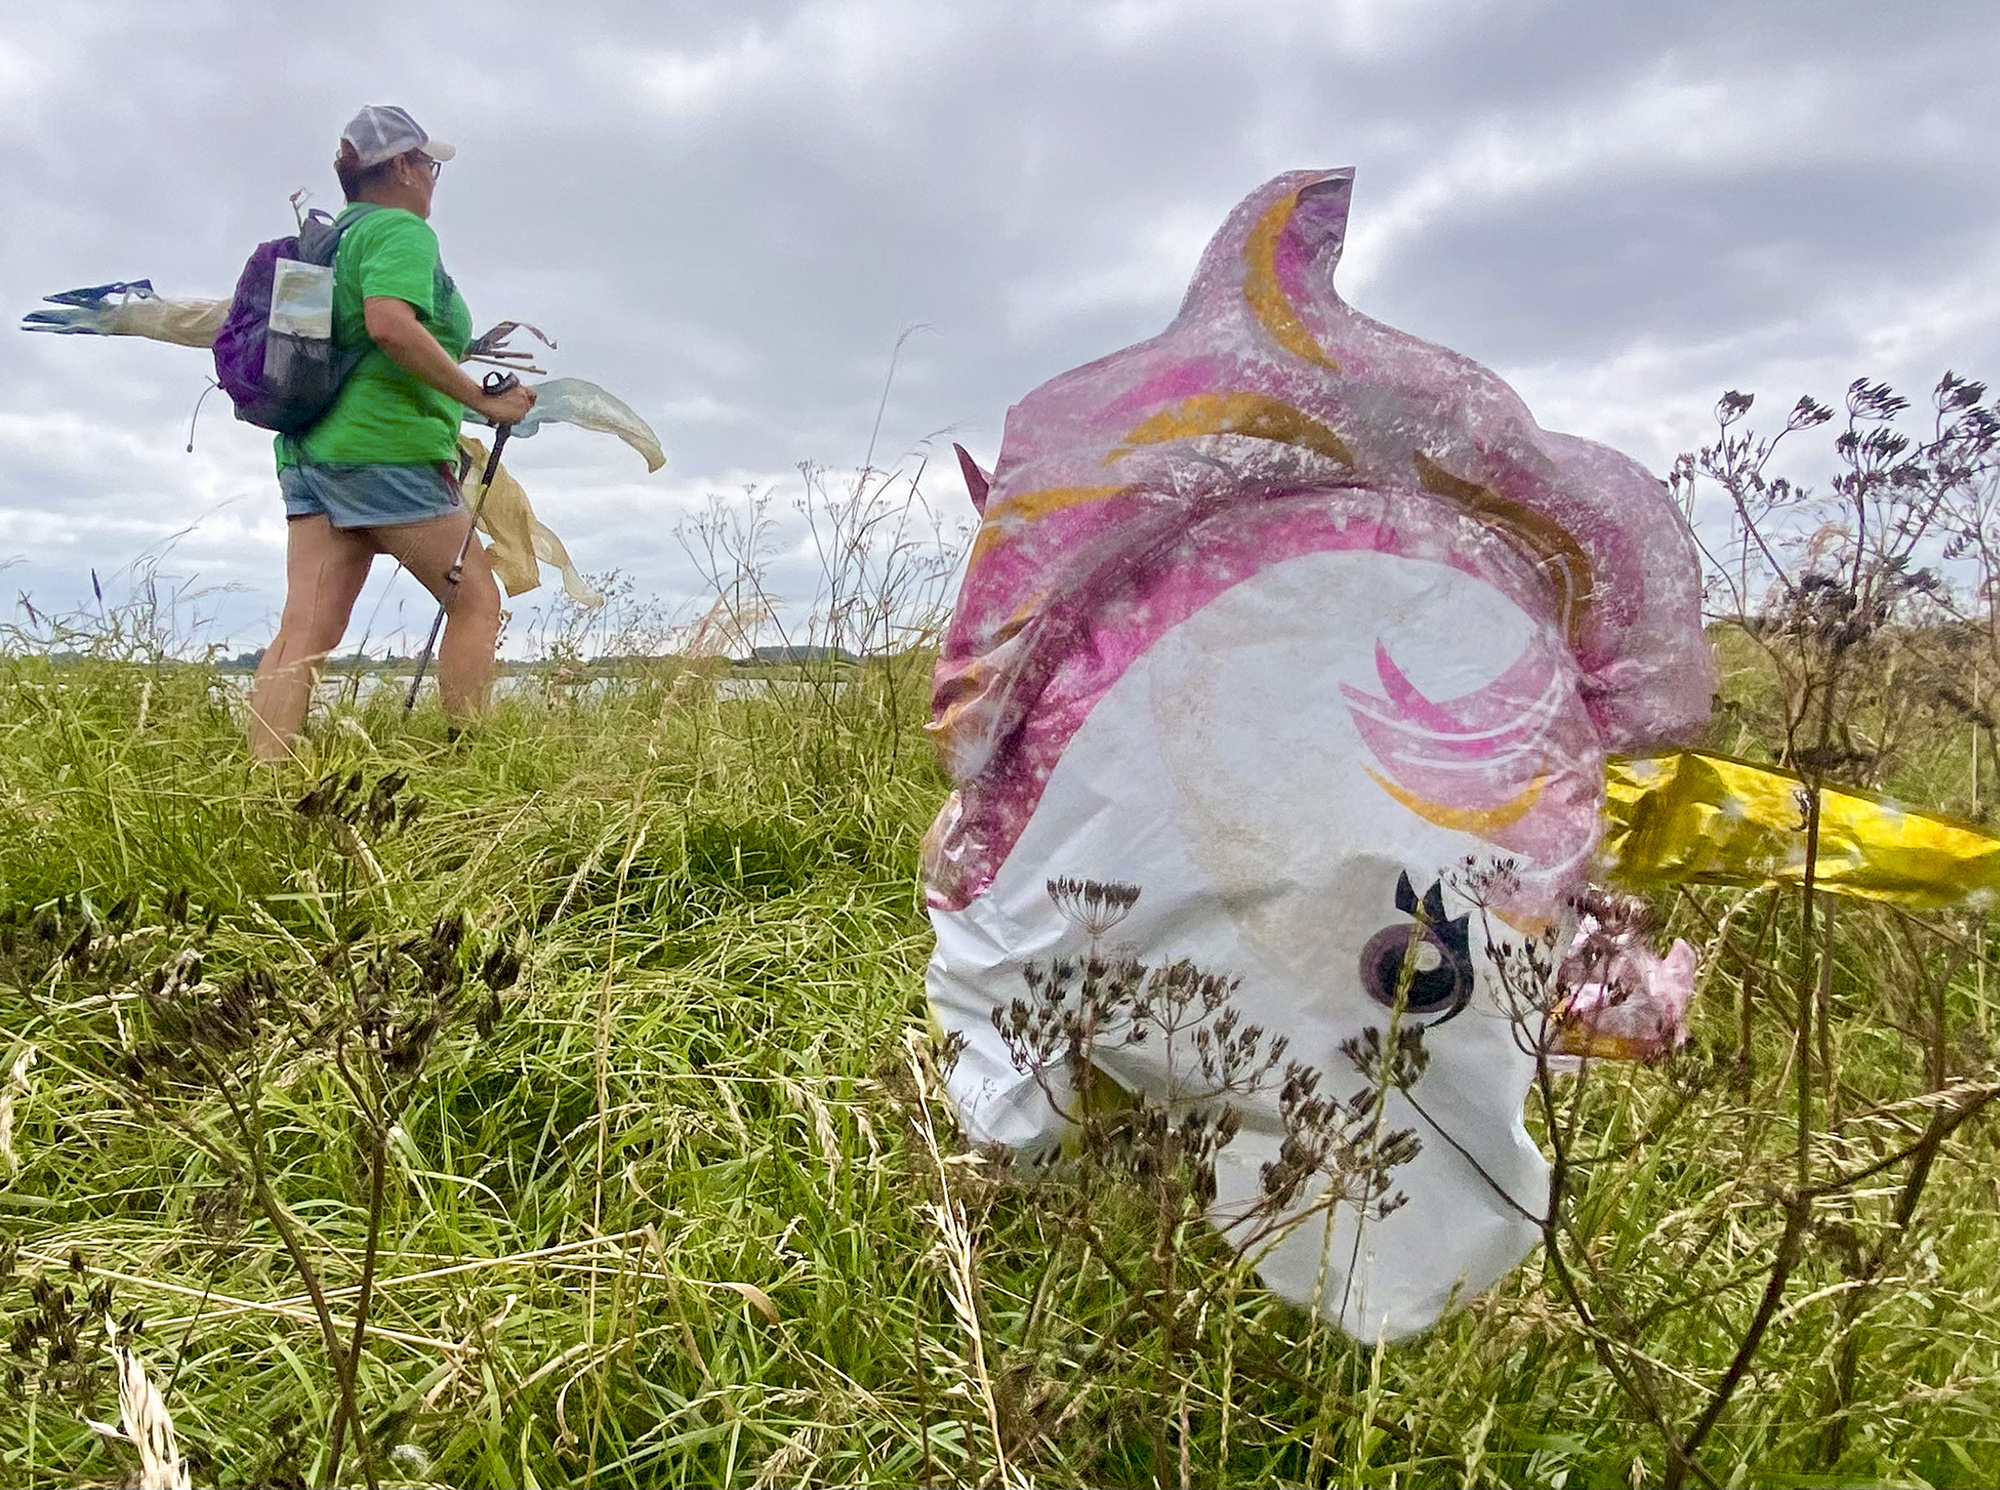 Gina passing pink unicorn near Barling credit Kevin Rushby